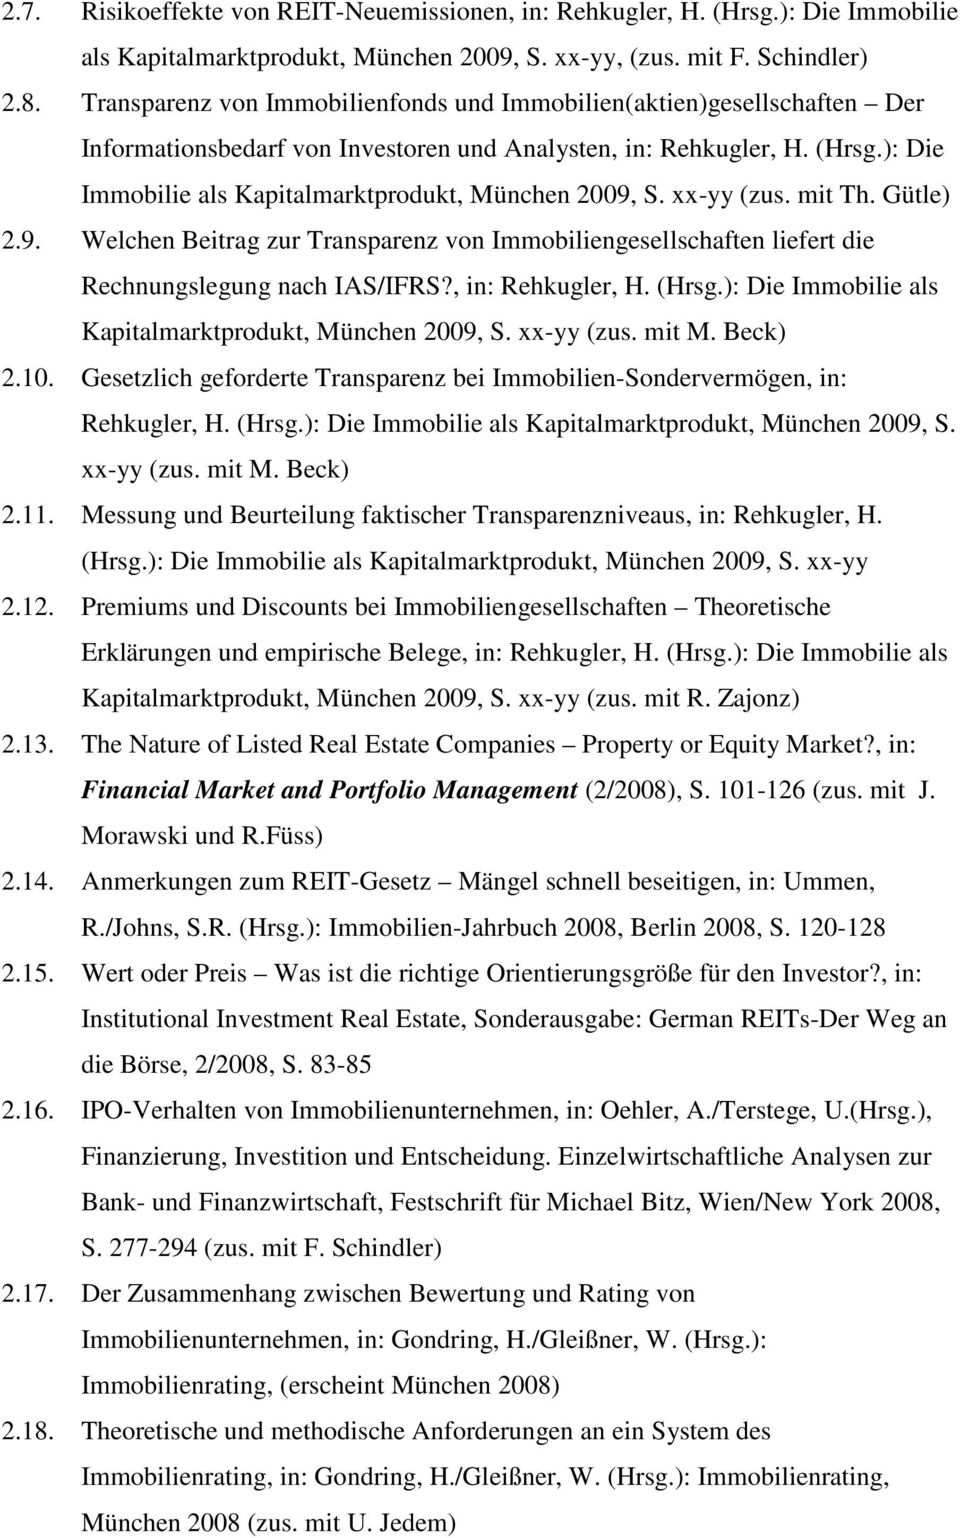 ): Die Immobilie als Kapitalmarktprodukt, München 2009, S. xx-yy (zus. mit Th. Gütle) 2.9. Welchen Beitrag zur Transparenz von Immobiliengesellschaften liefert die Rechnungslegung nach IAS/IFRS?